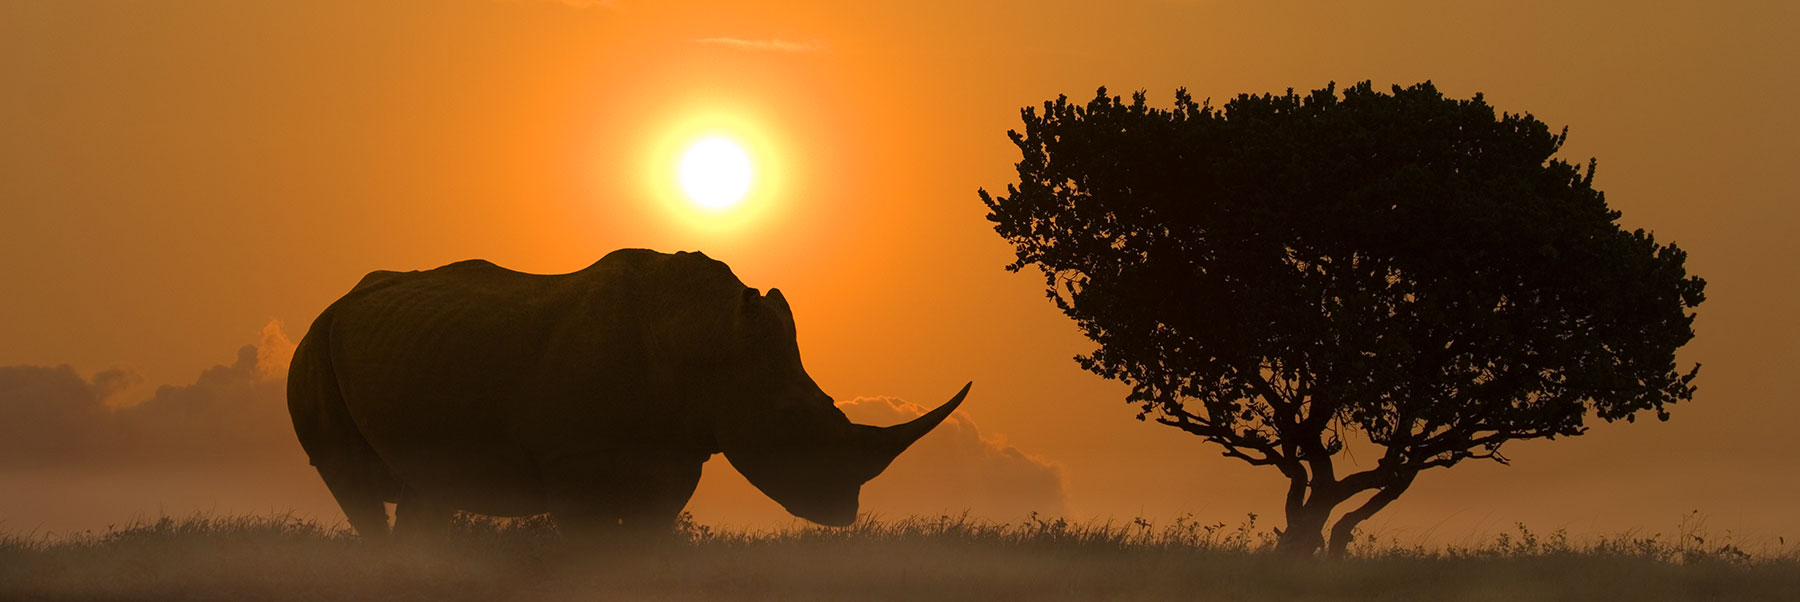 African Tour - Rhino at Sunset